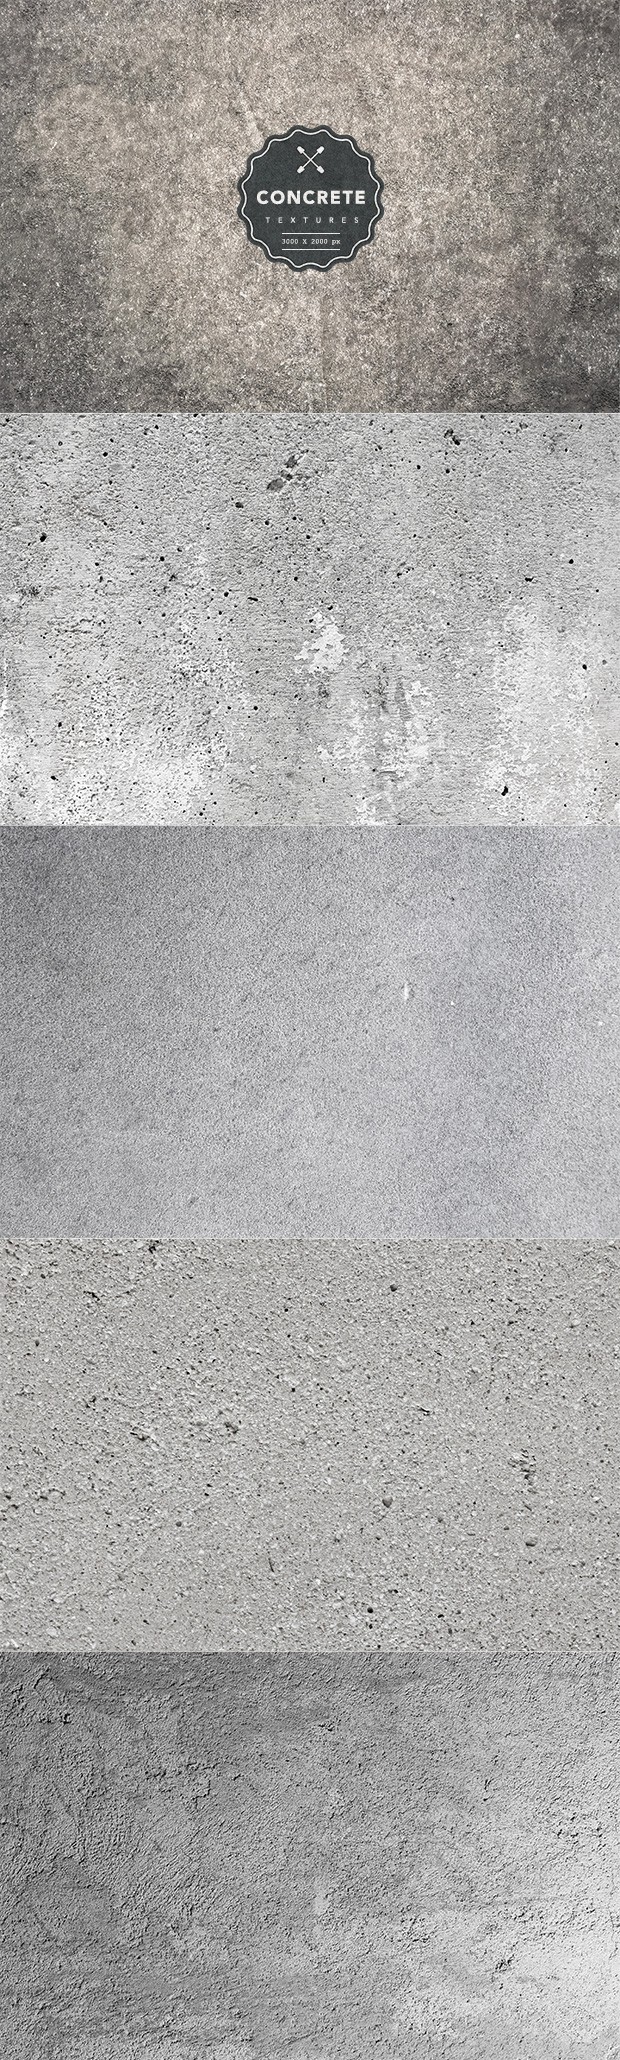 concrete-textures